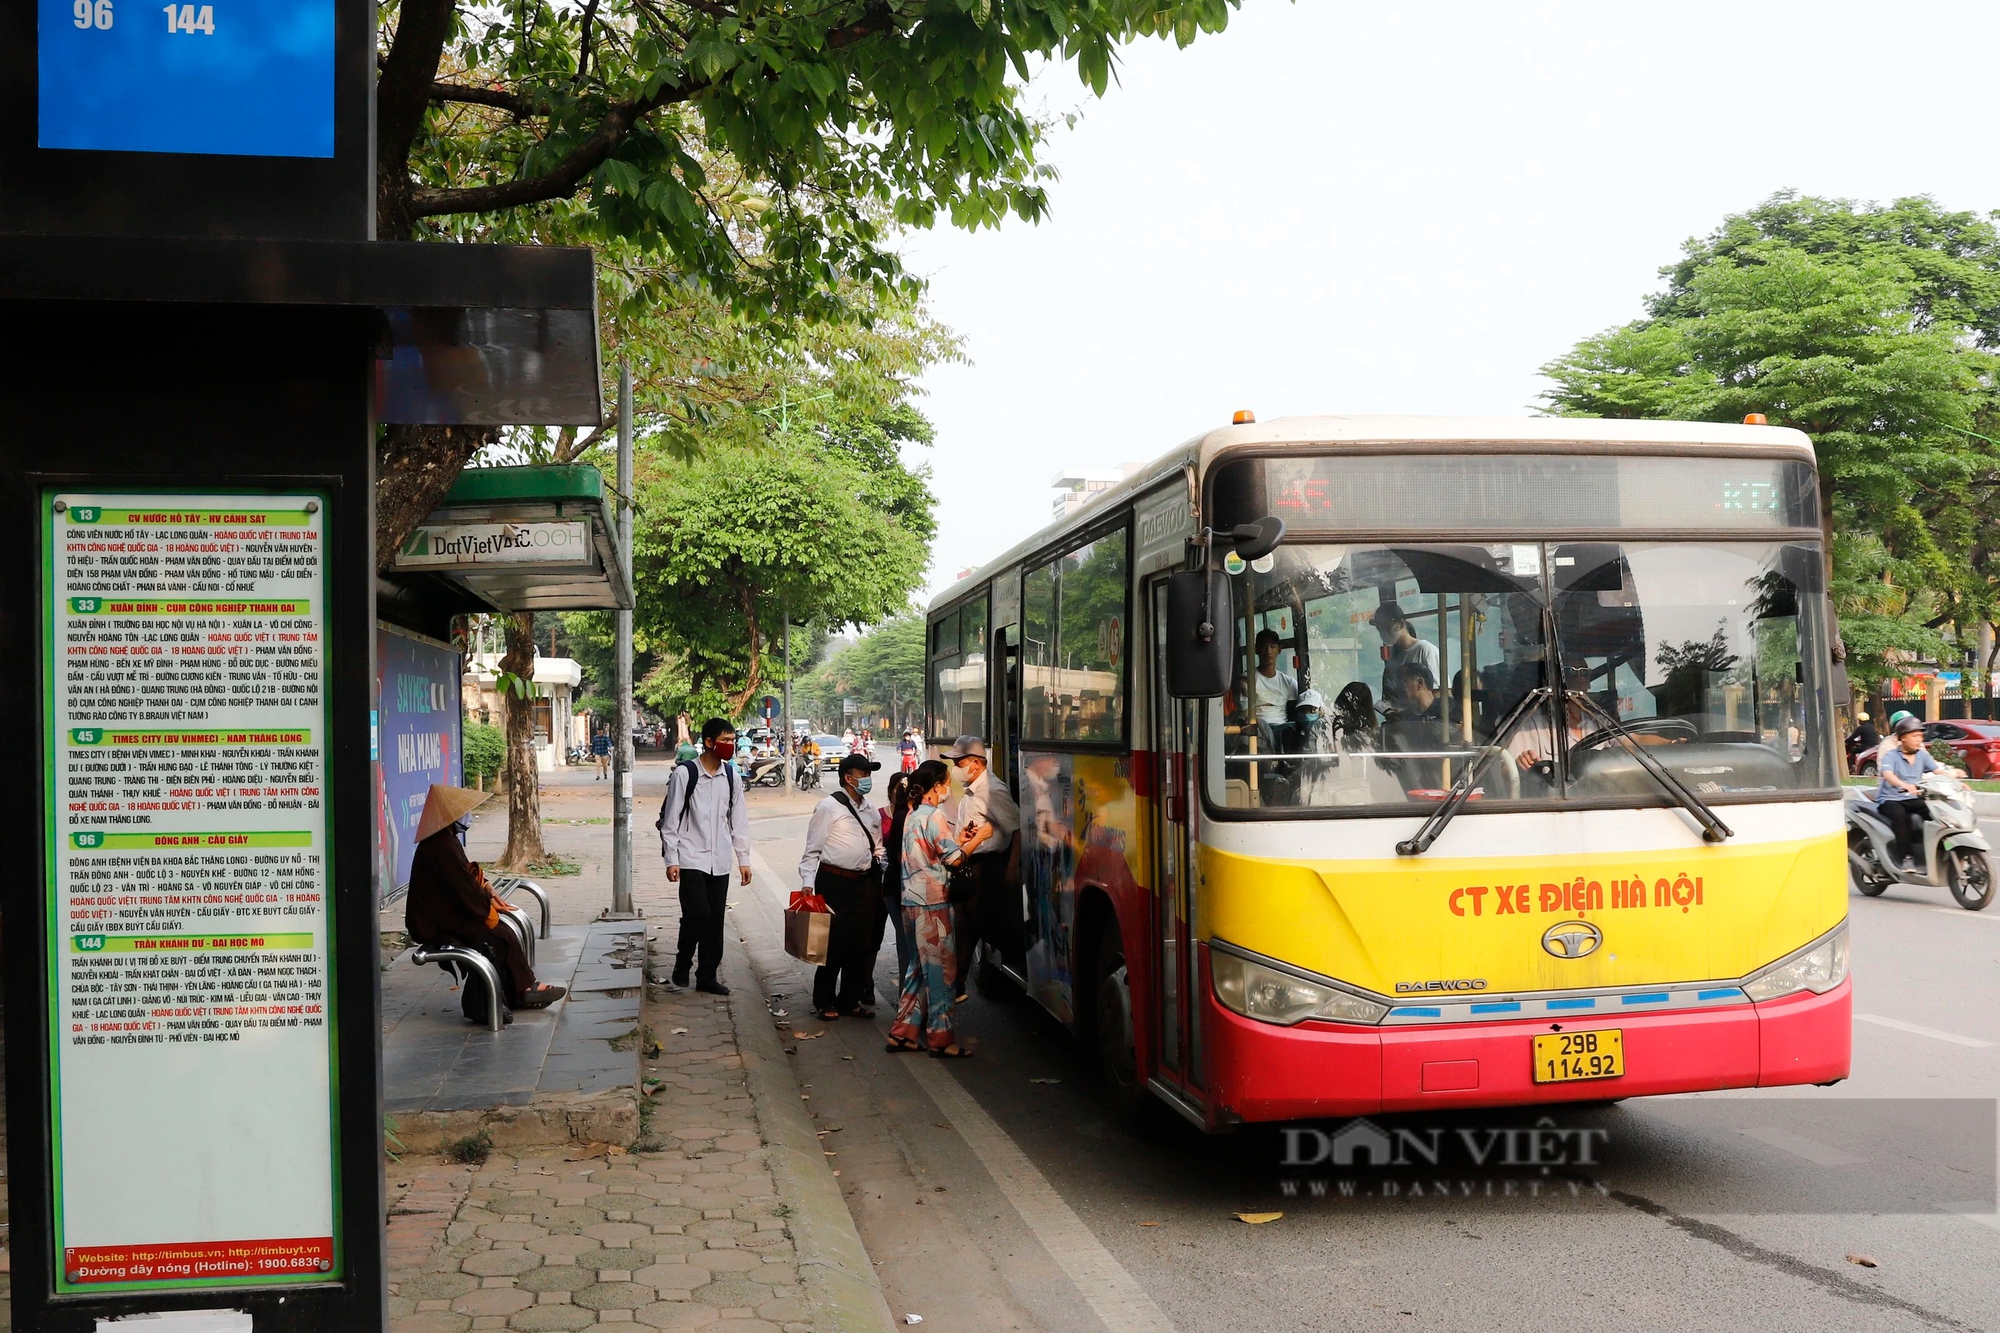 Bi hài cảnh người dân lên xuống tại điểm chờ xe buýt đạt chuẩn Châu Âu ở Hà Nội- Ảnh 1.